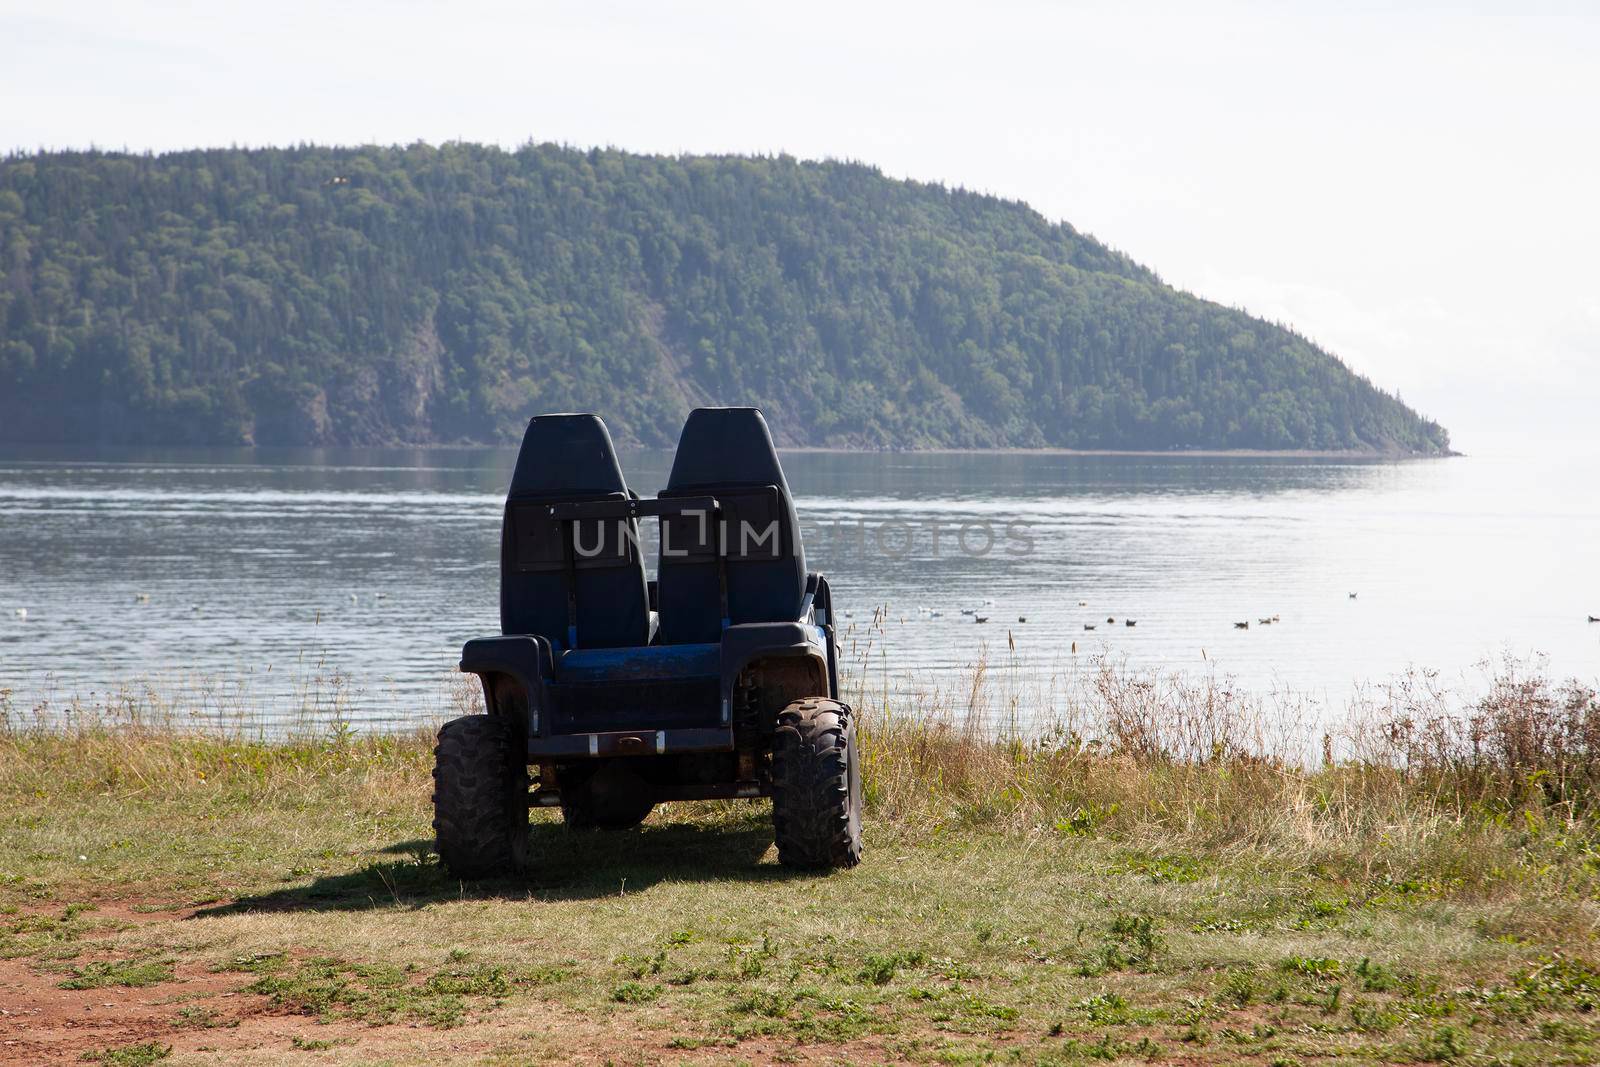  an empty ATV ready for adventure on a sandy canadian beach 